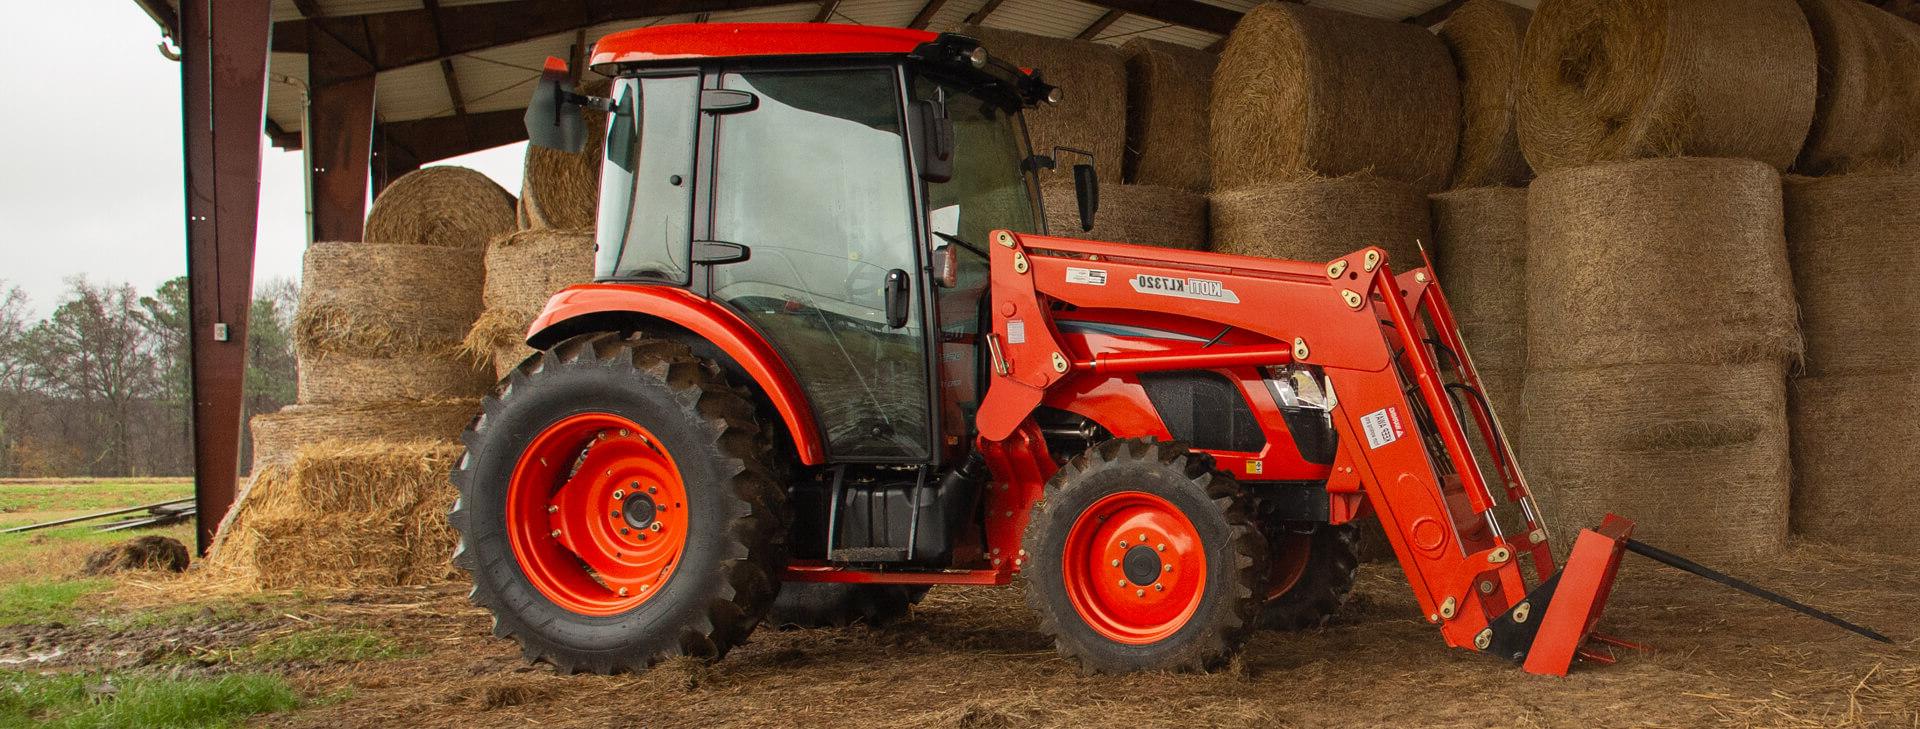 用于商业农业的紧凑型拖拉机:在Kioti找到最好的拖拉机